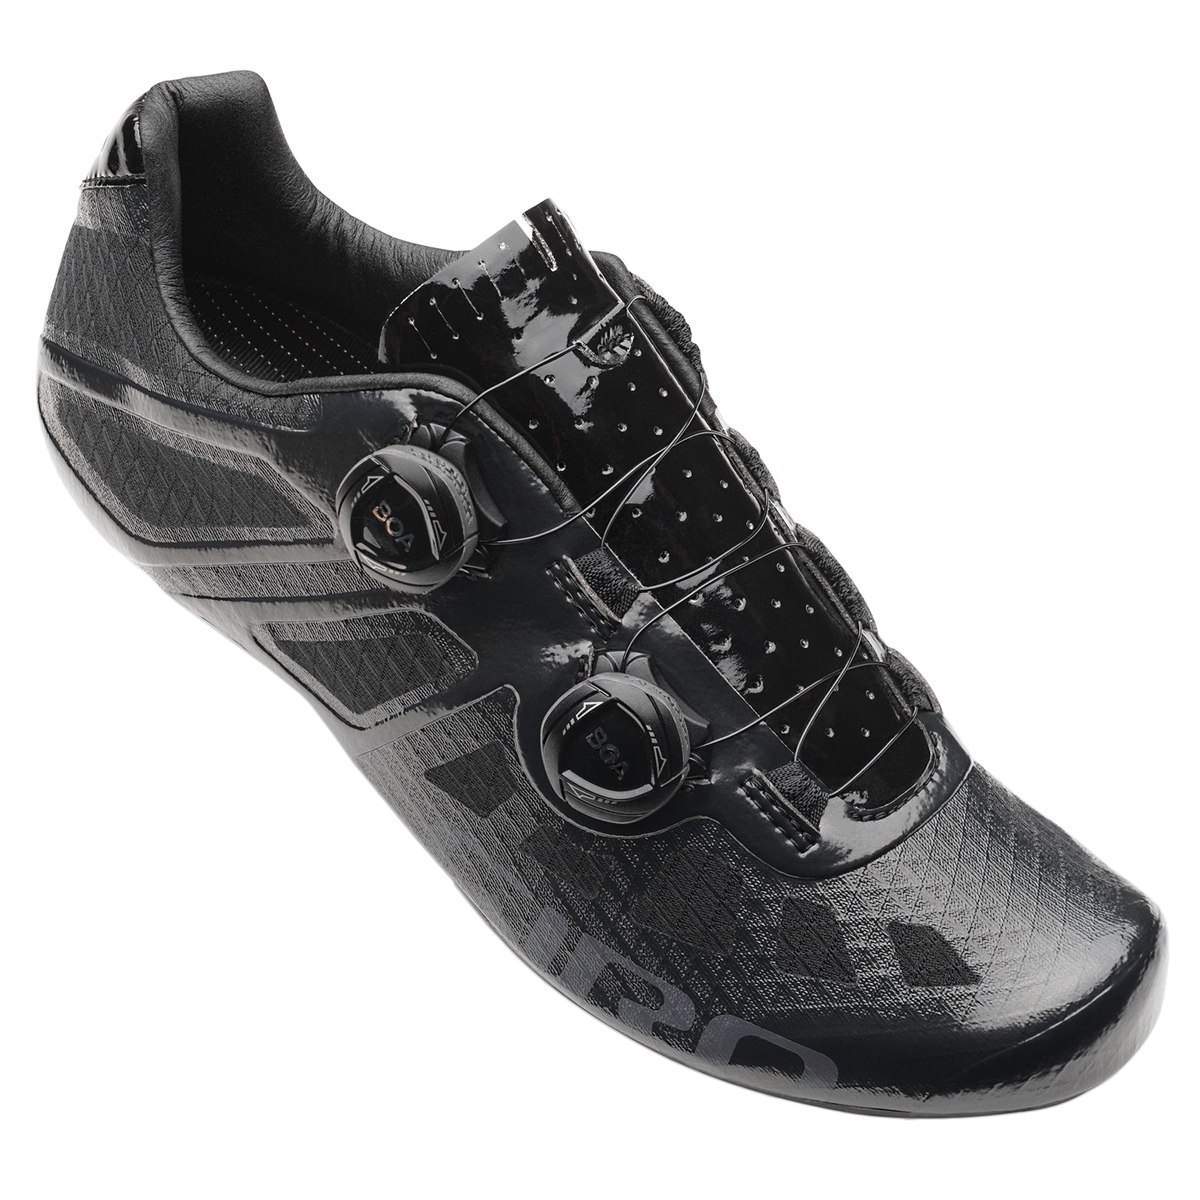 Produktbild von Giro Imperial Rennradschuhe - schwarz